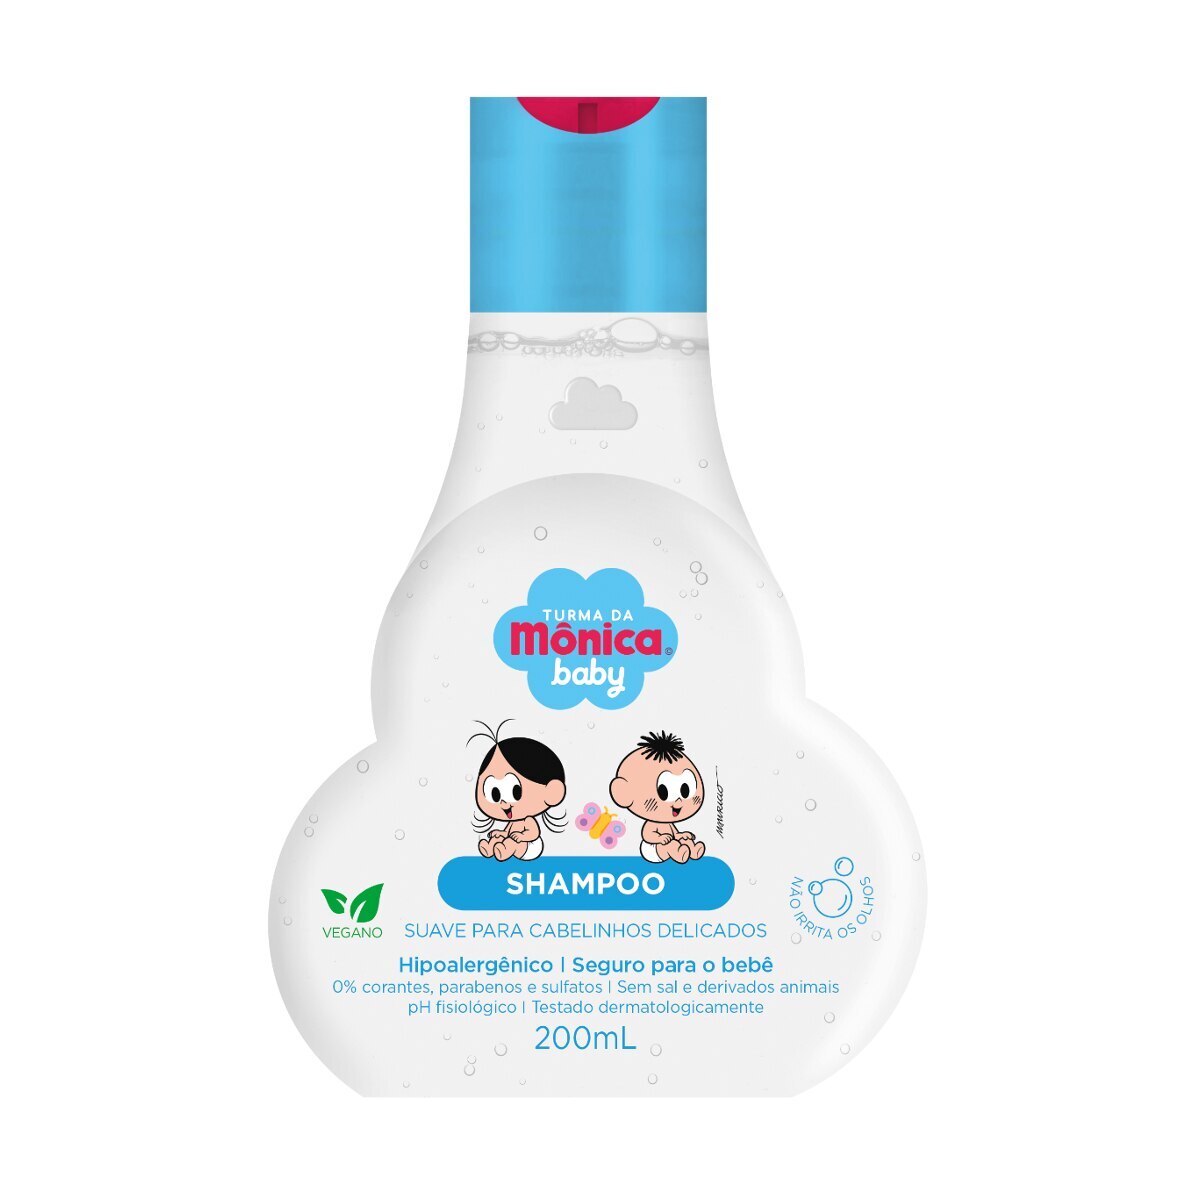 Shampoo Turma da Monica Baby Suave para Cabelinhos Delicados 200ml